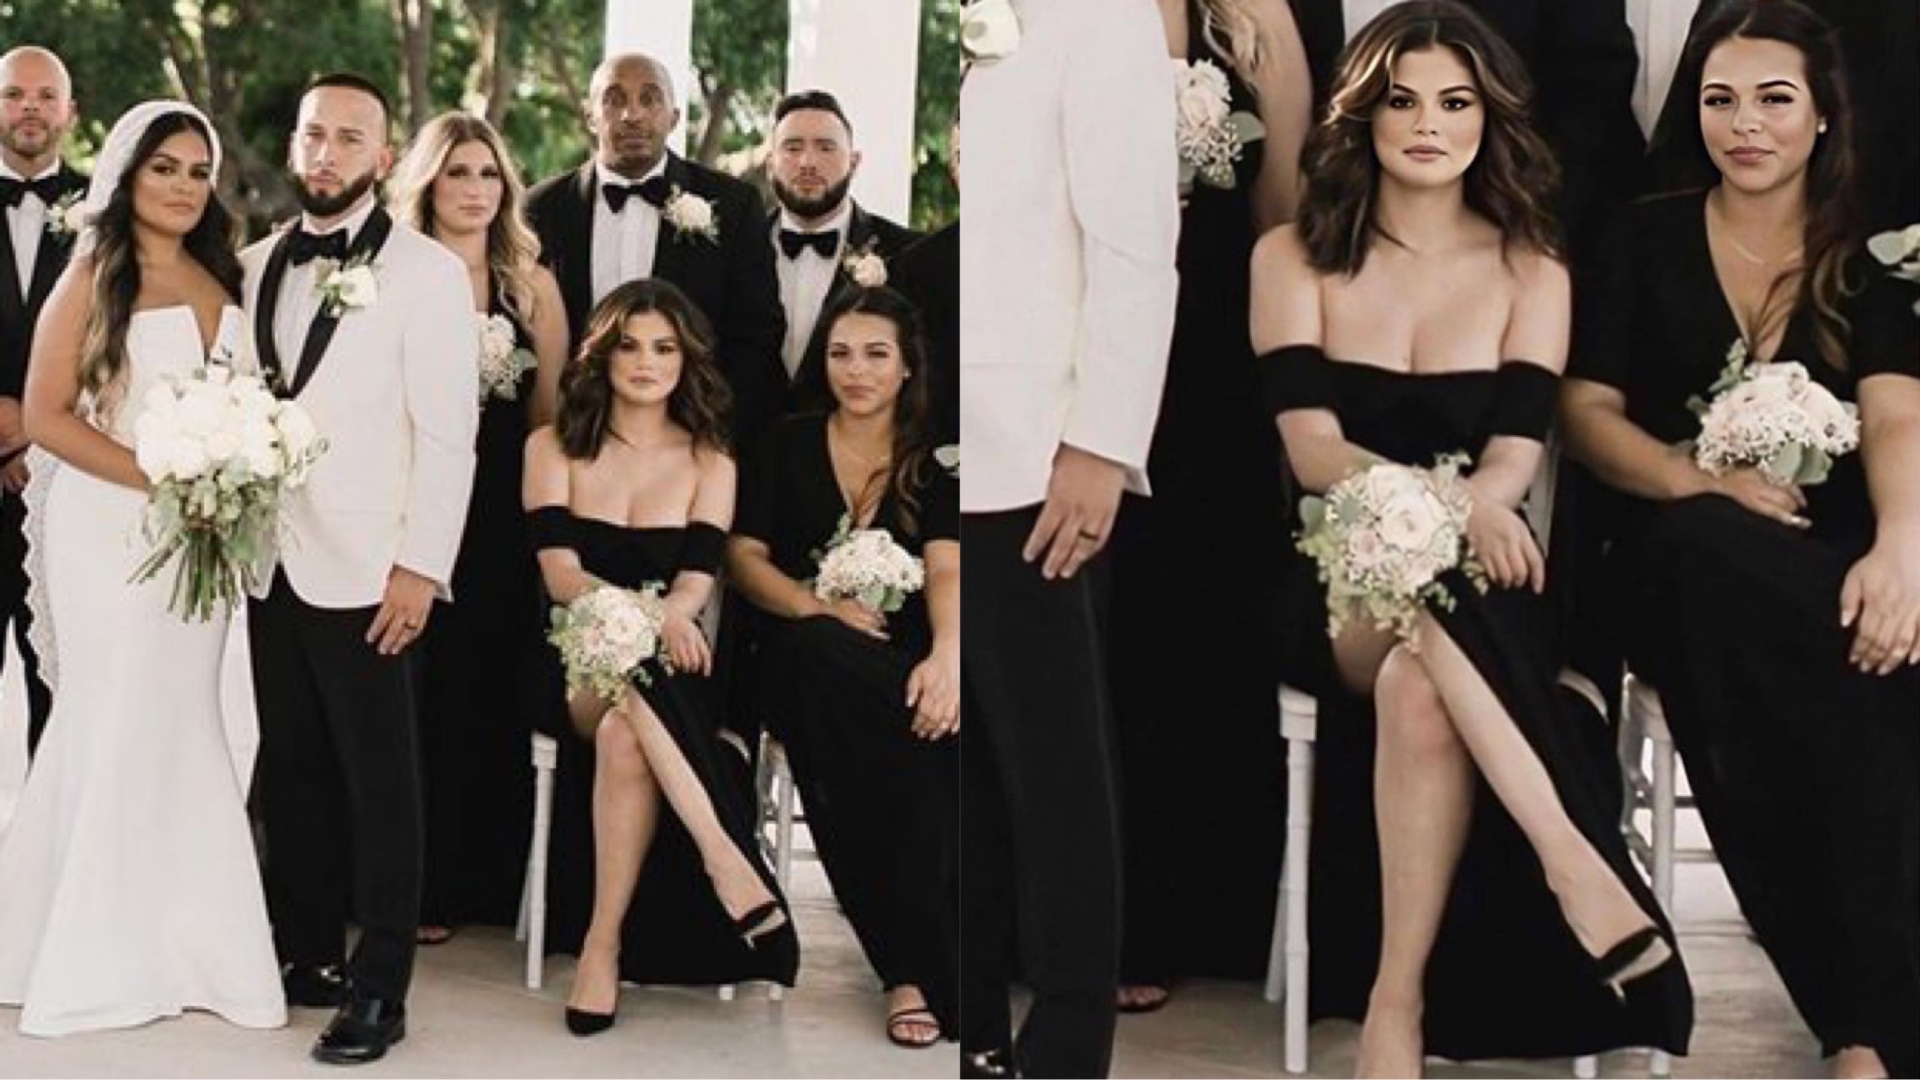 Xuất hiện trong đám cưới em họ cùng vô số các phù dâu, phù rể khác nhưng Selena Gomez khiến dân tình không thể rời mắt bởi chiếc váy đen sexy khoe vòng 1 nóng bỏng cùng thần thái cực sang chảnh và nổi bật.